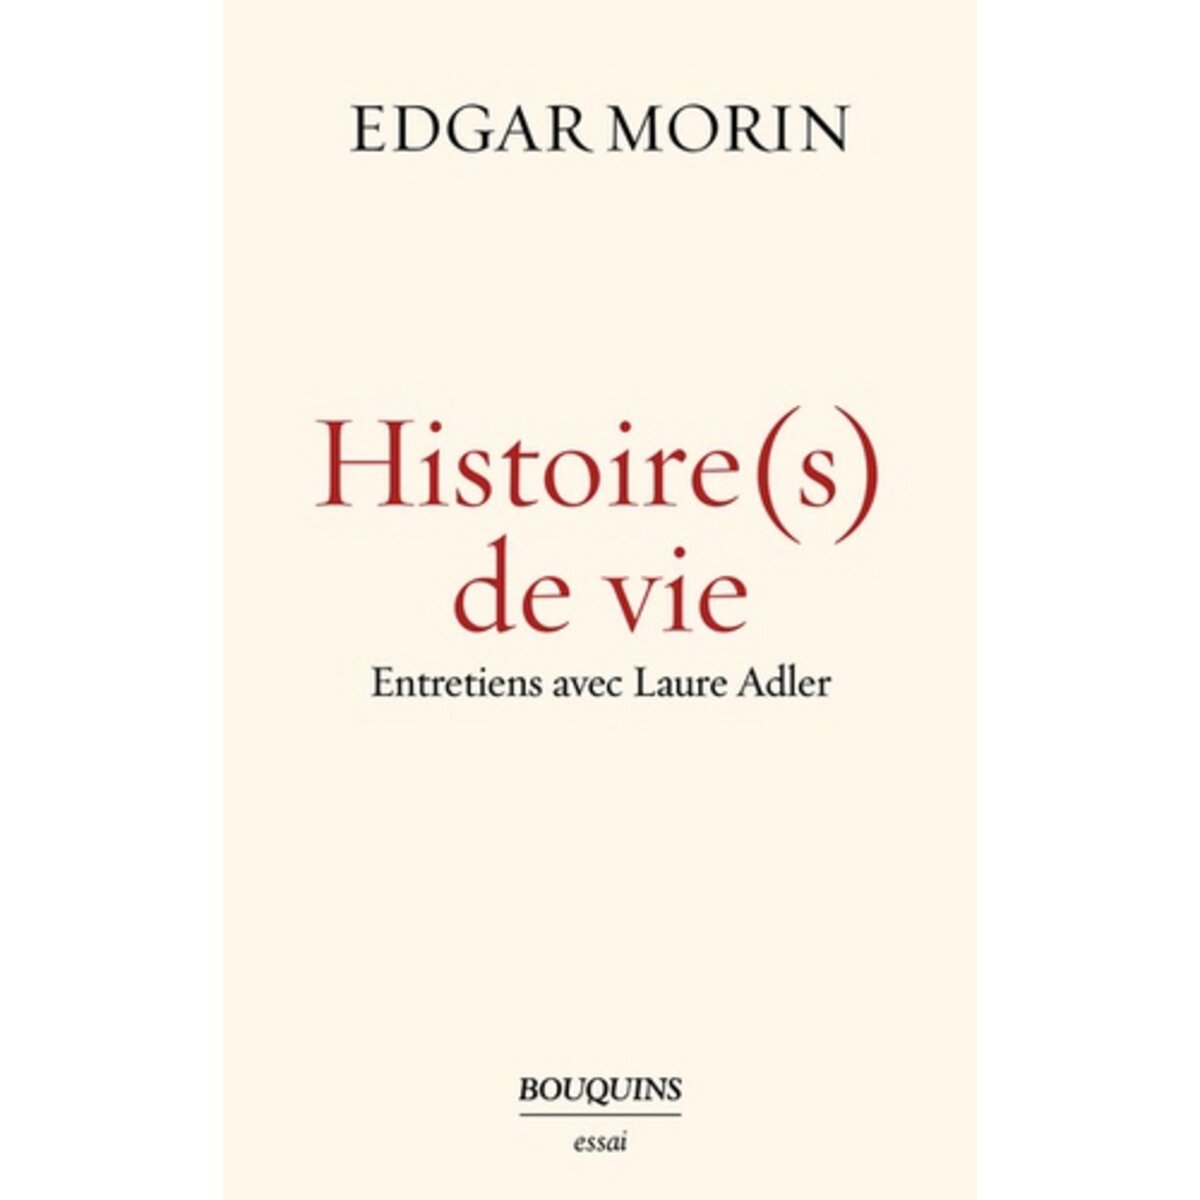  HISTOIRE(S) DE VIE, Morin Edgar